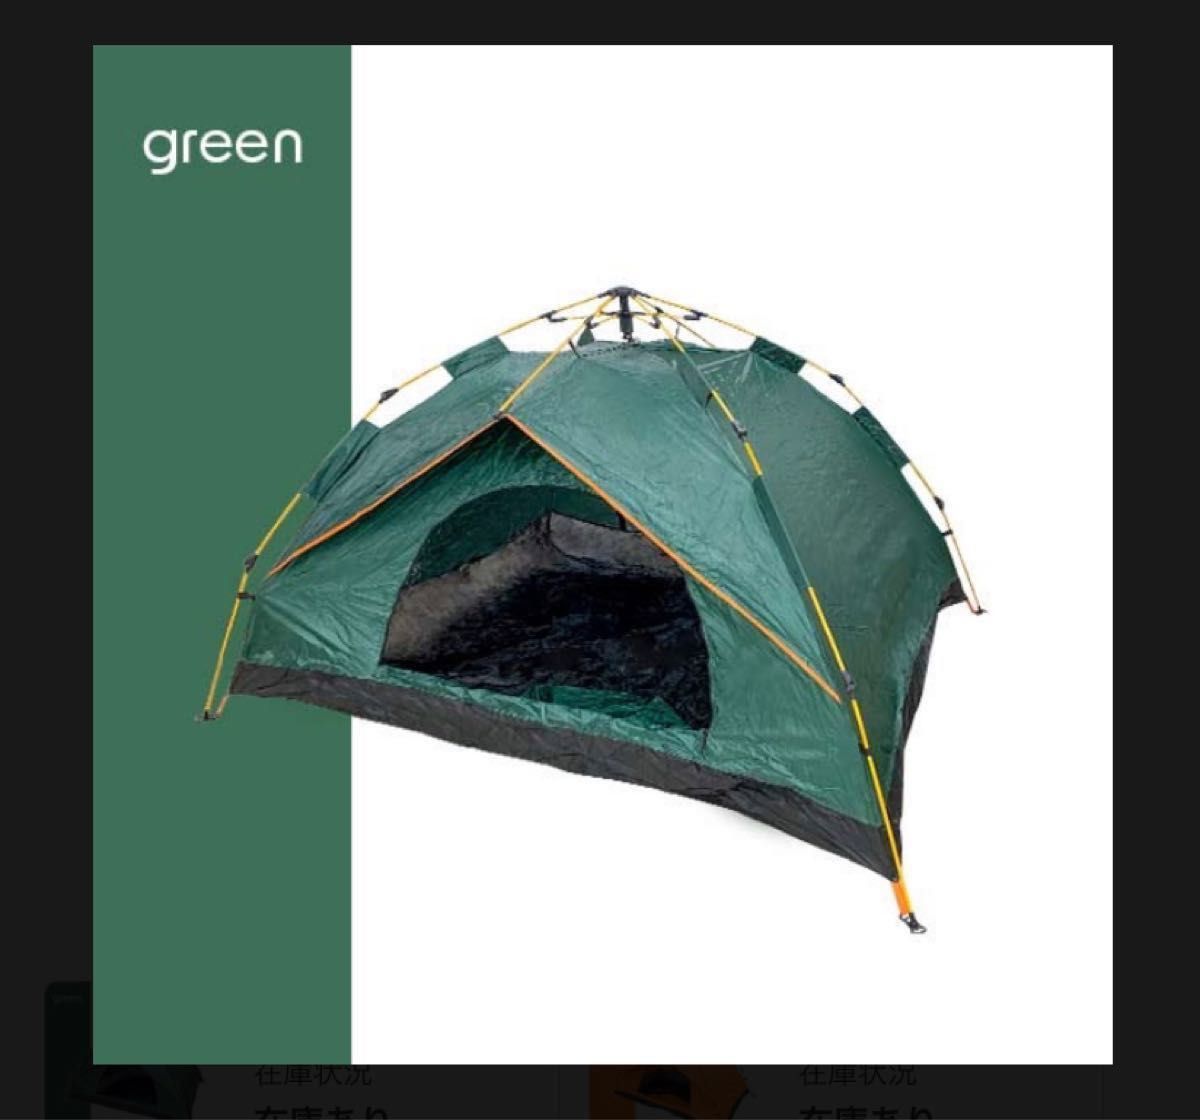 キャンプに最適 簡単ワンタッチ仕様　二人用 ドームテント キャンプ アウトドア用品　簡易テント 高耐久性